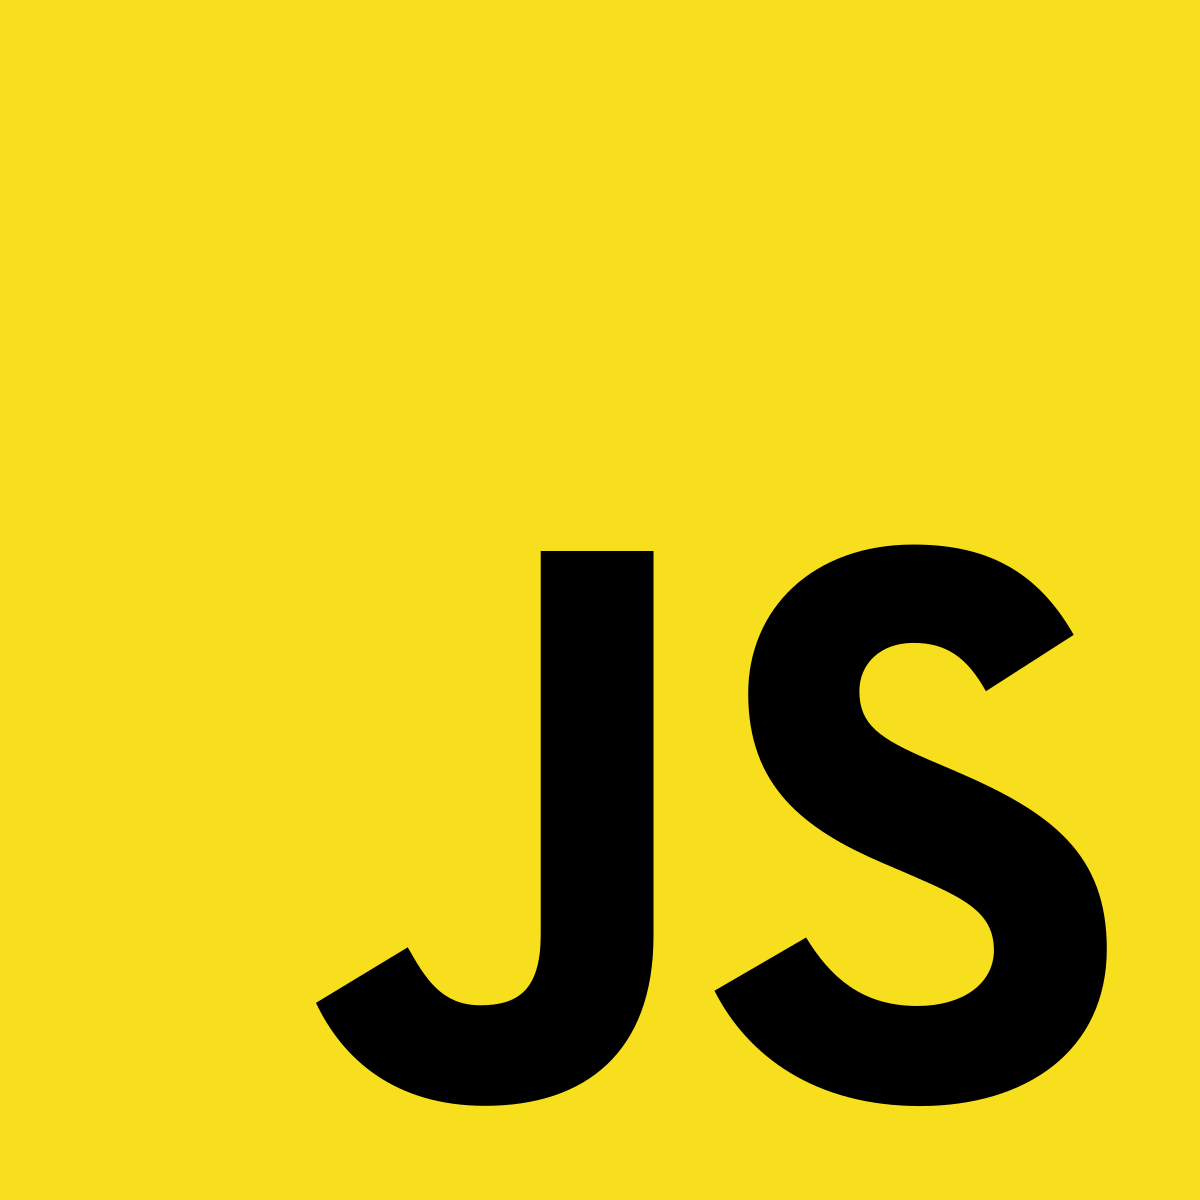 HTML5 CSS3 JavaScript Logo - JavaScript